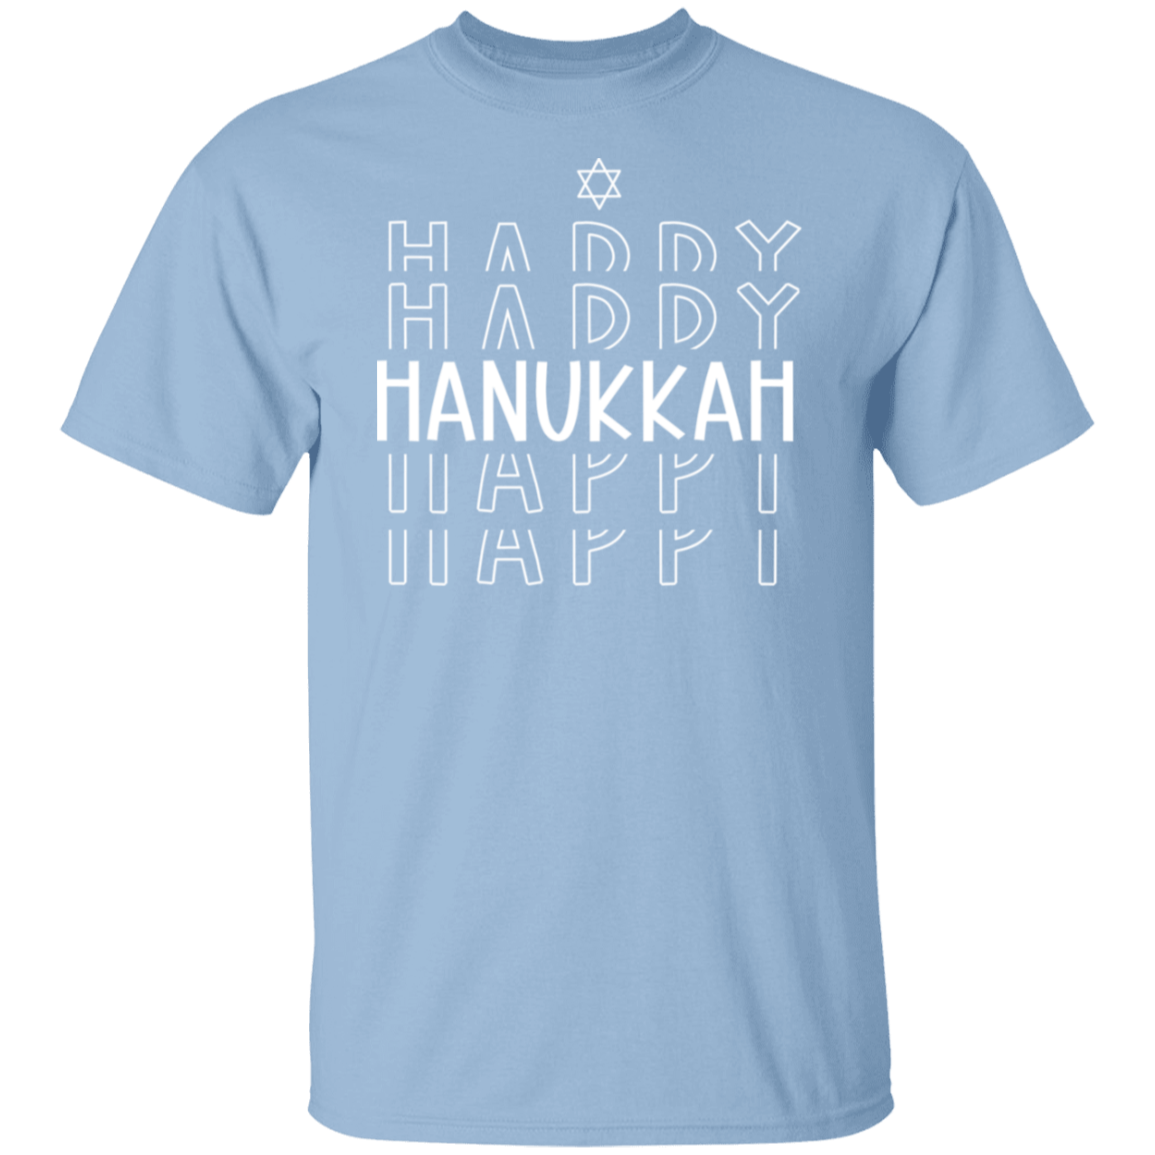 Happy Hanukkah 5.3 oz. T-Shirt